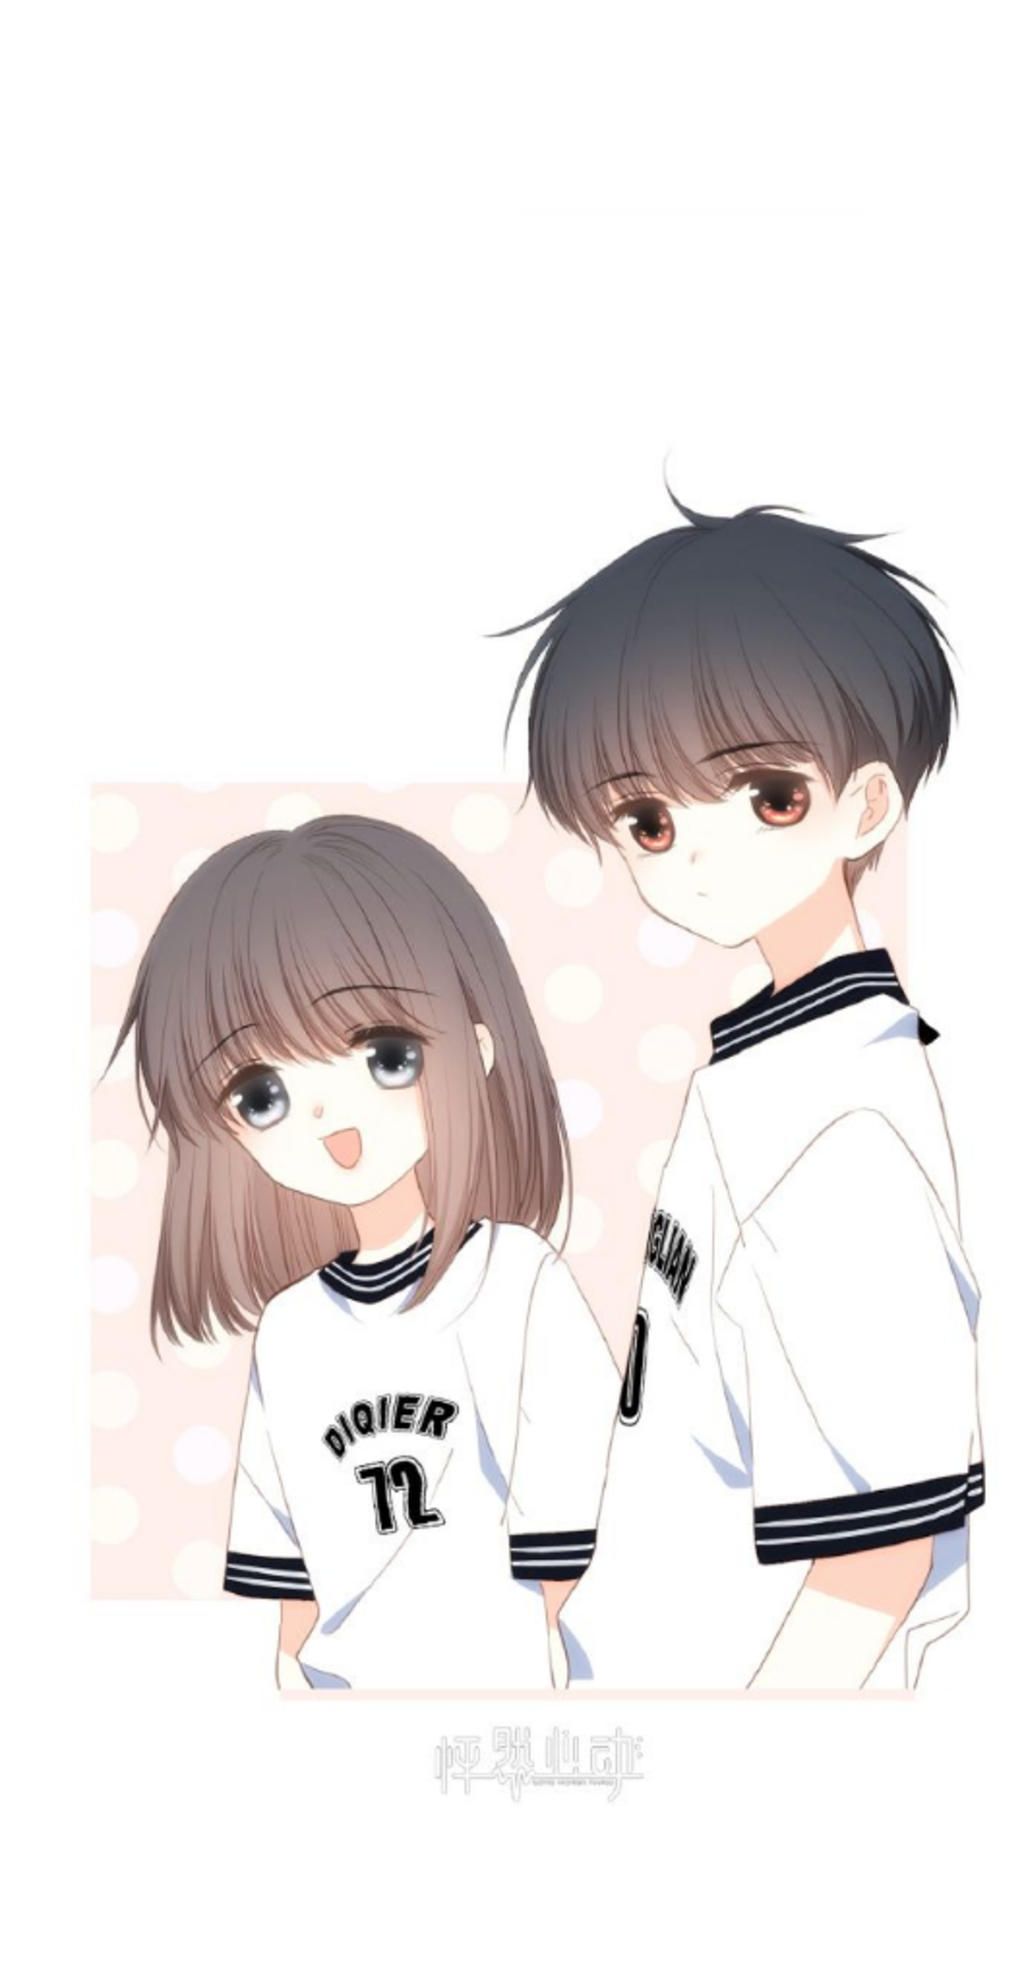 vẽ anime cặp đôi như ở trong hình hoặc vẽ giống cx dc DIQIER 12